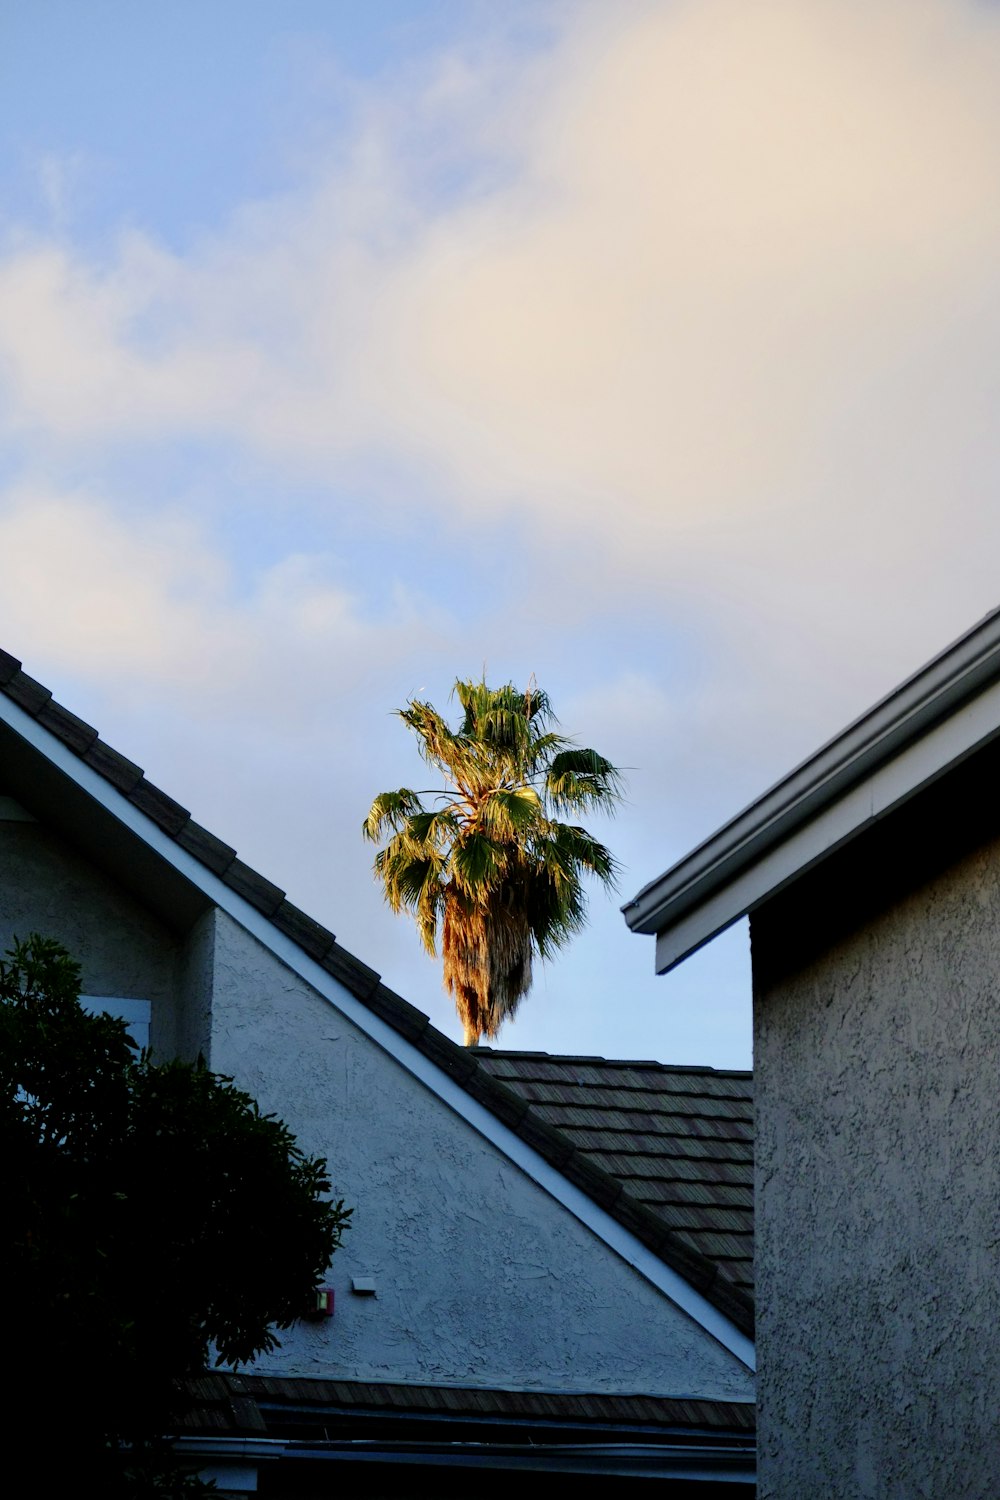 a palm tree on a roof